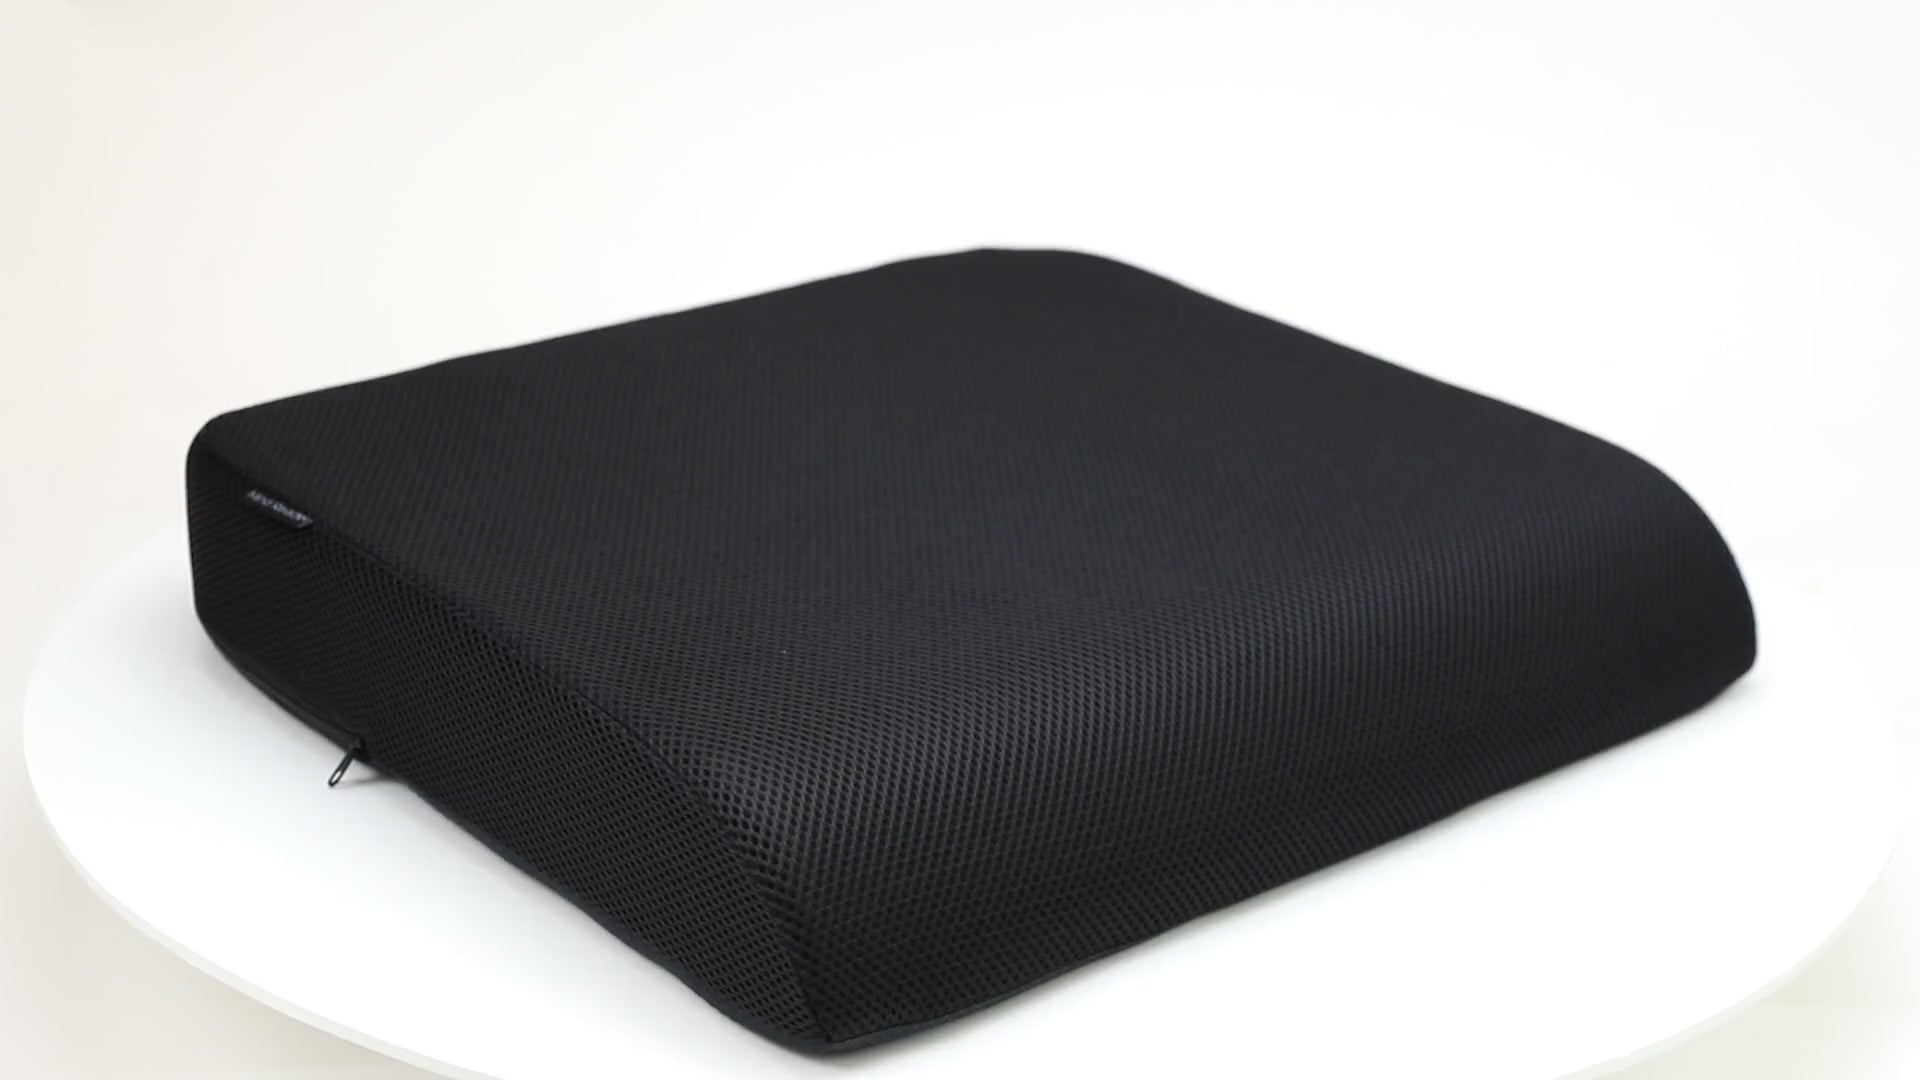 Comfort Gel Seat Cushion - Portable Memory Foam Chair Cushion